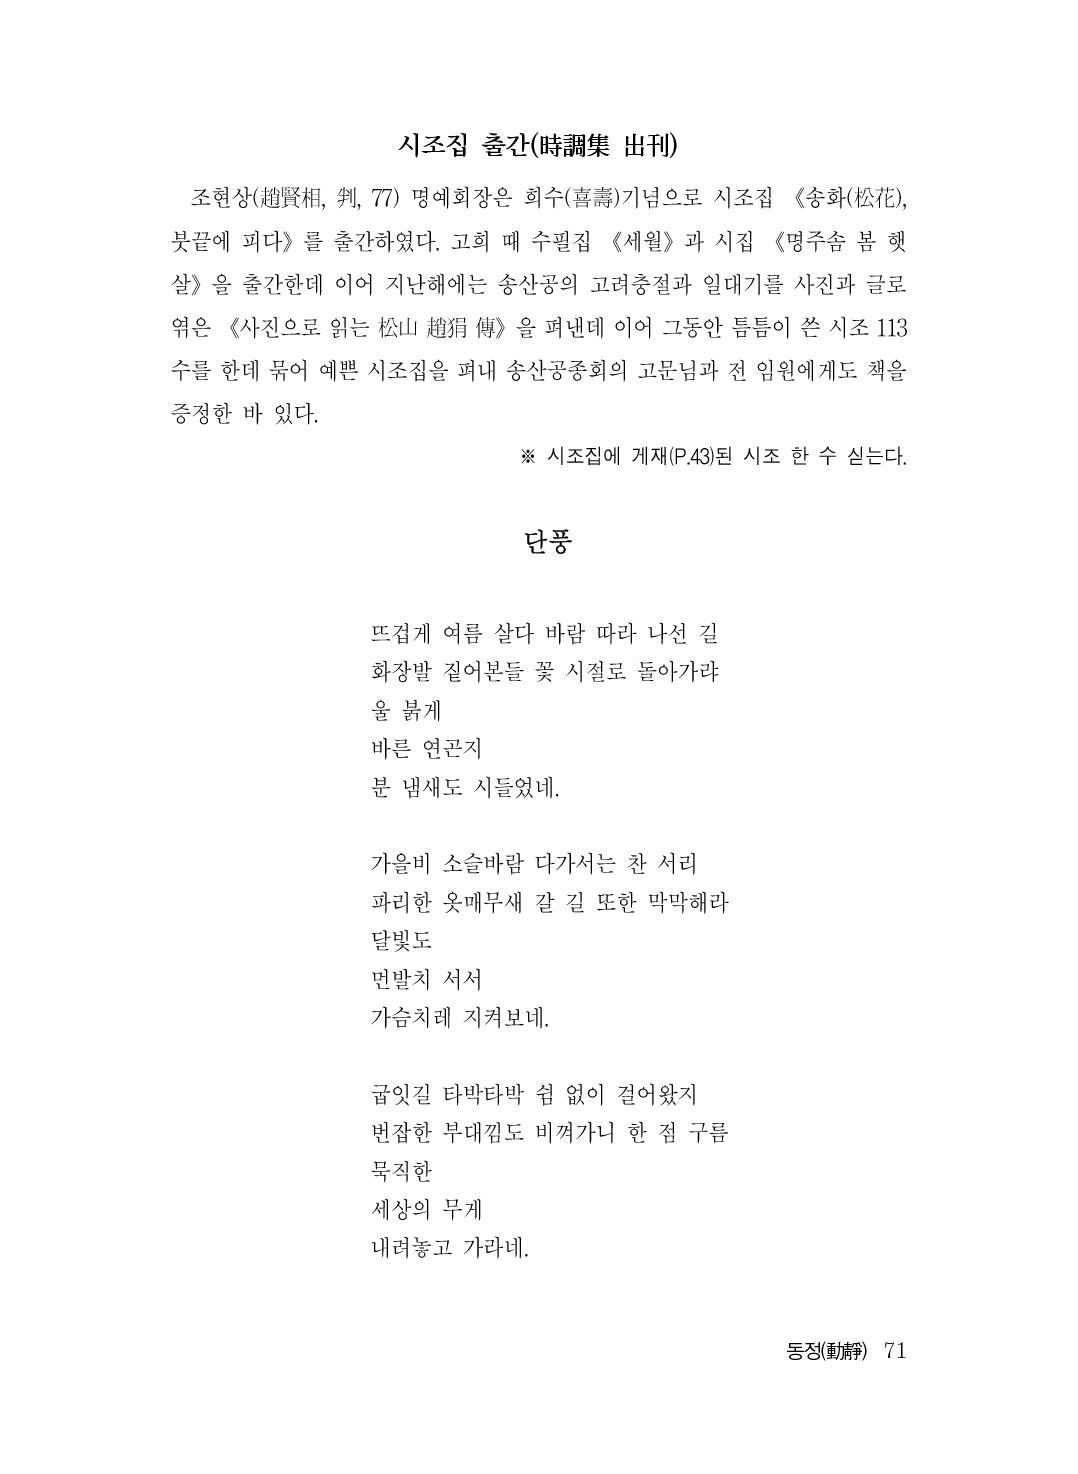 (전체) 송산종보(27호)(최종)_72.jpg